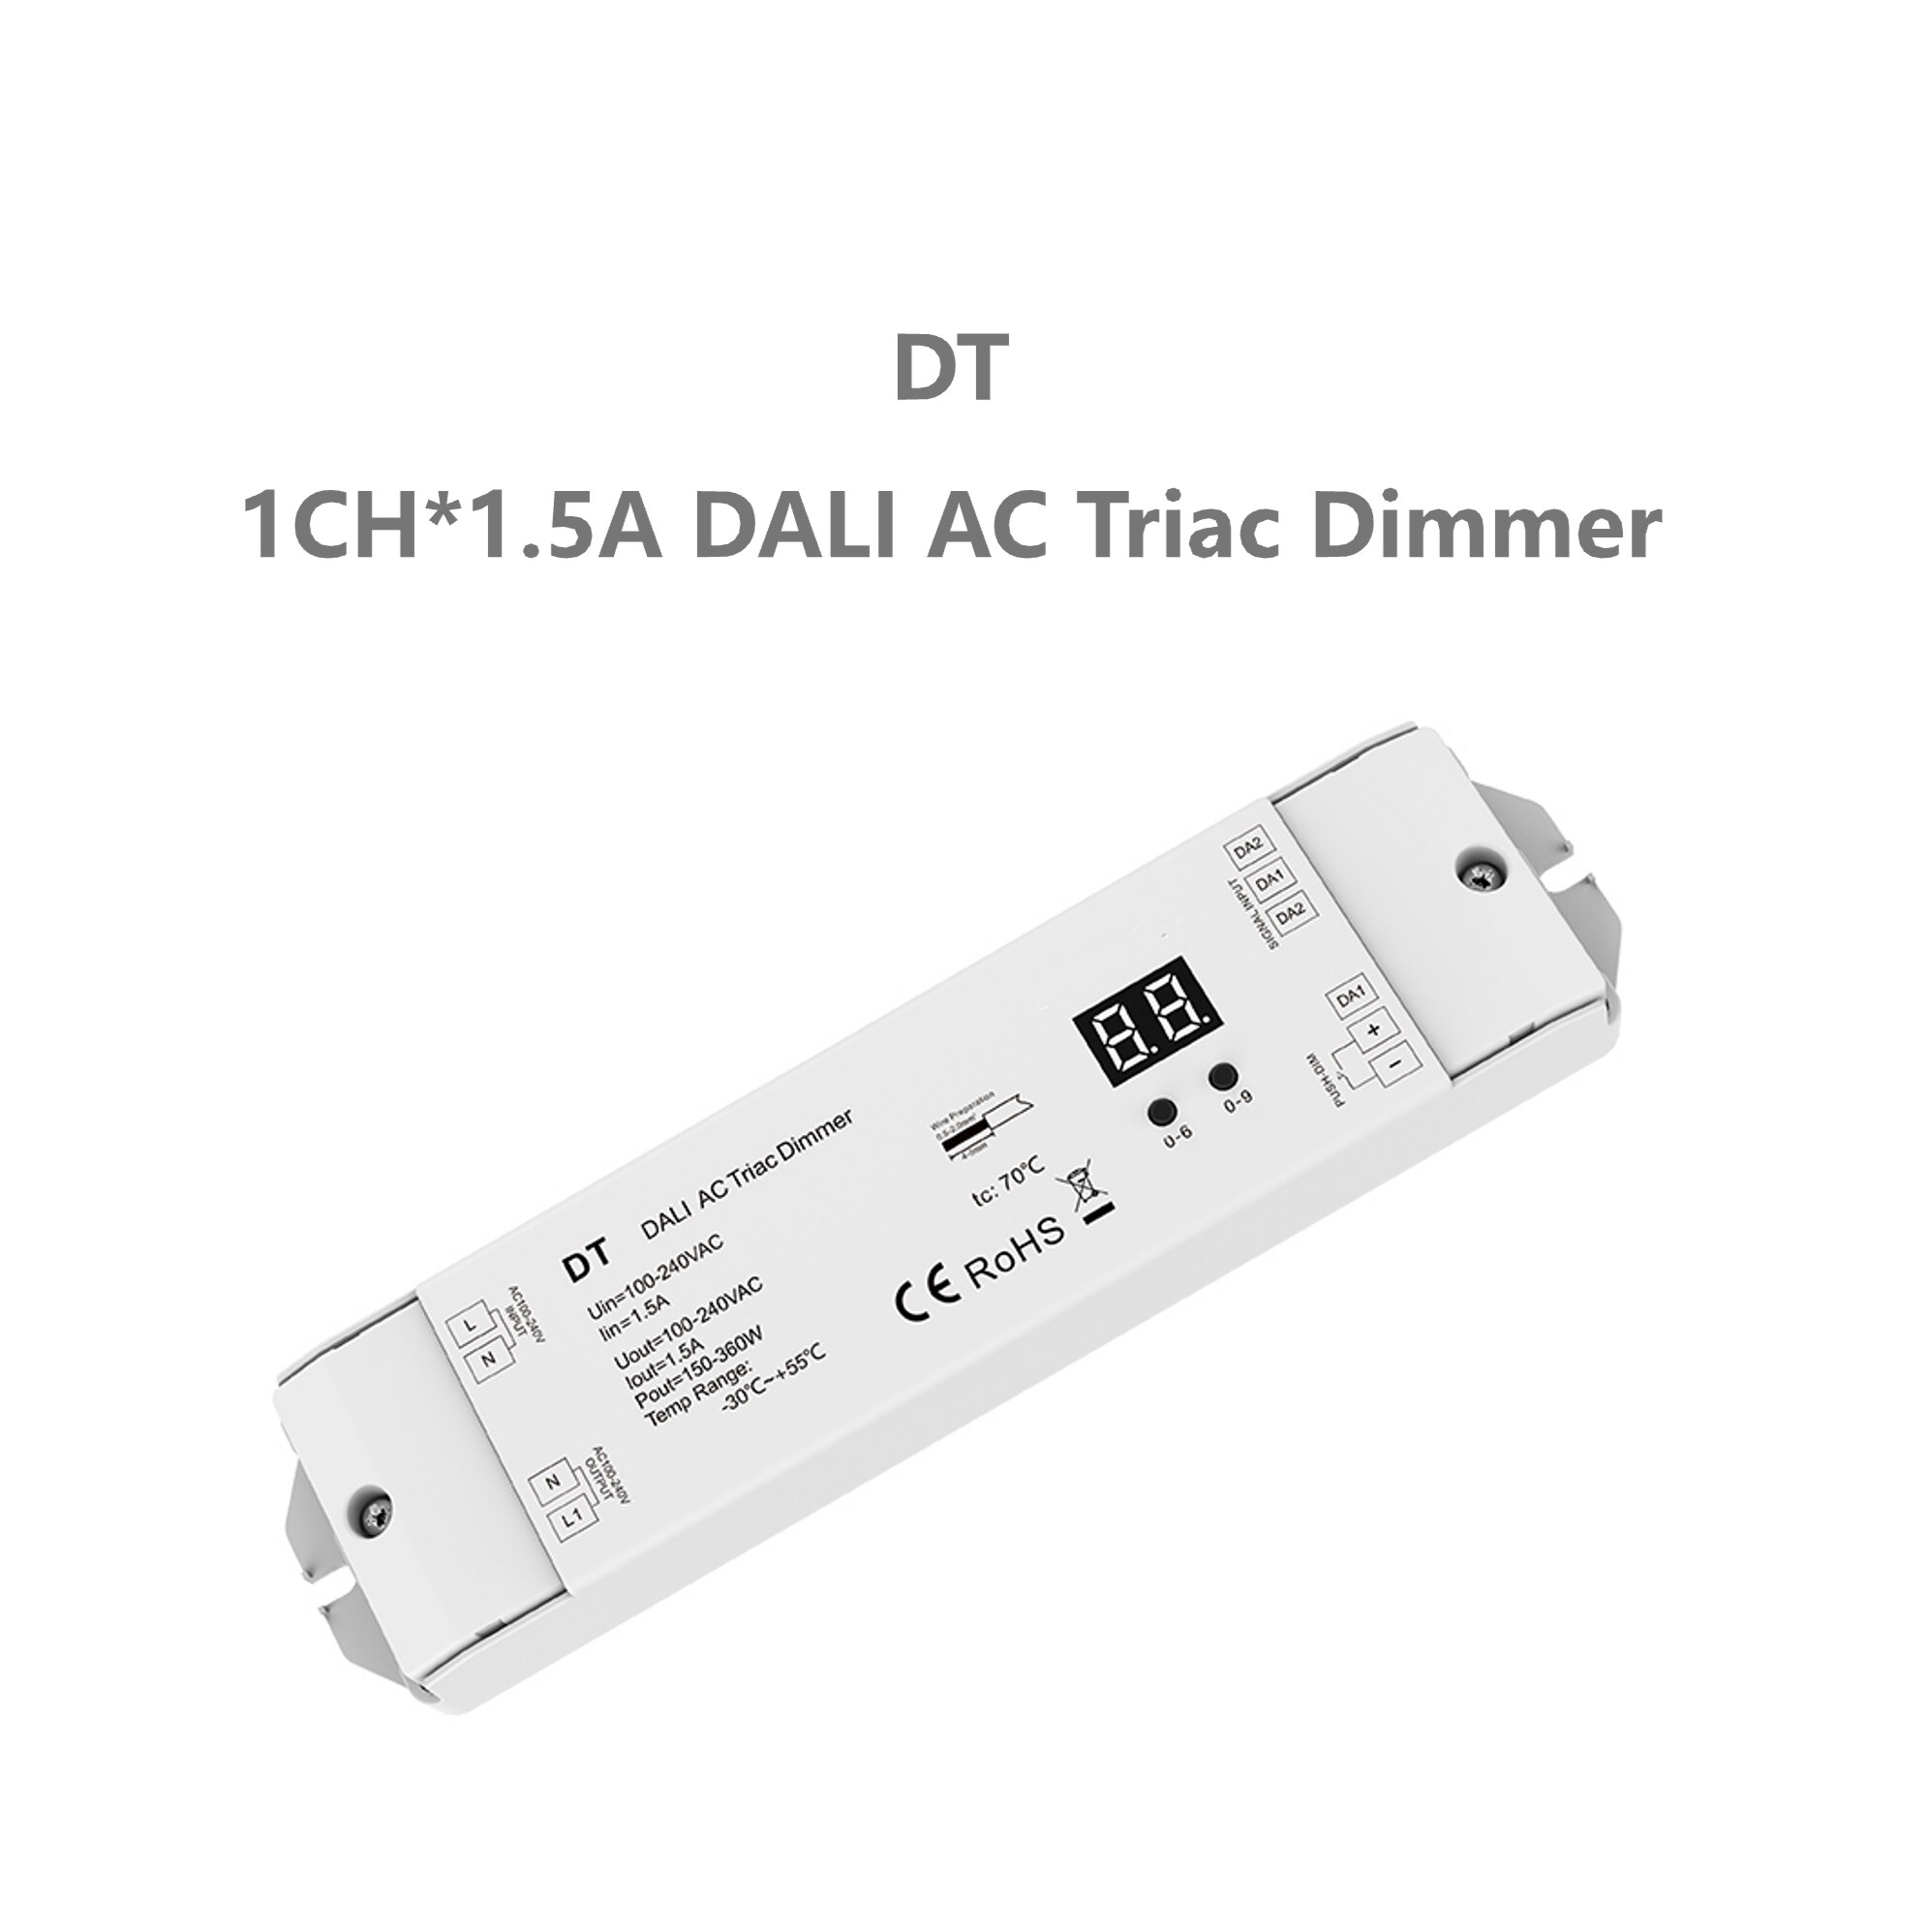 SkyDance DT 1CH * 1.5A AC Triac DALI Dimmer 150-36..